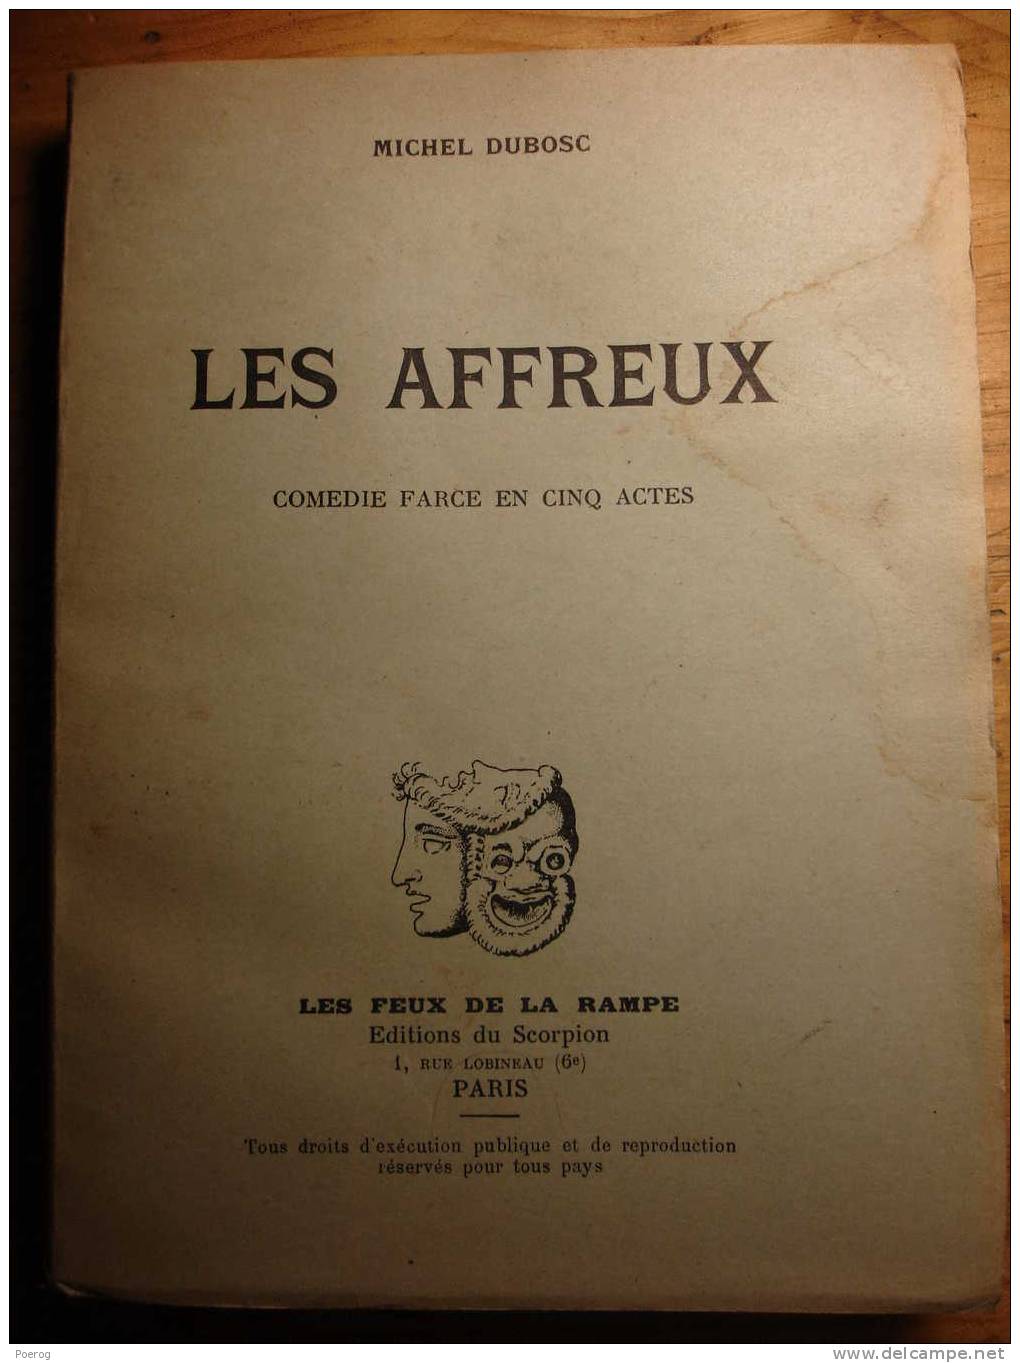 MICHEL DUBOSC - LES AFFREUX - Comédie Farce En 5 Actes - 1958 - LES EDITIONS DU SCORPION - LES FEUX DE LA RAMPE - Auteurs Français